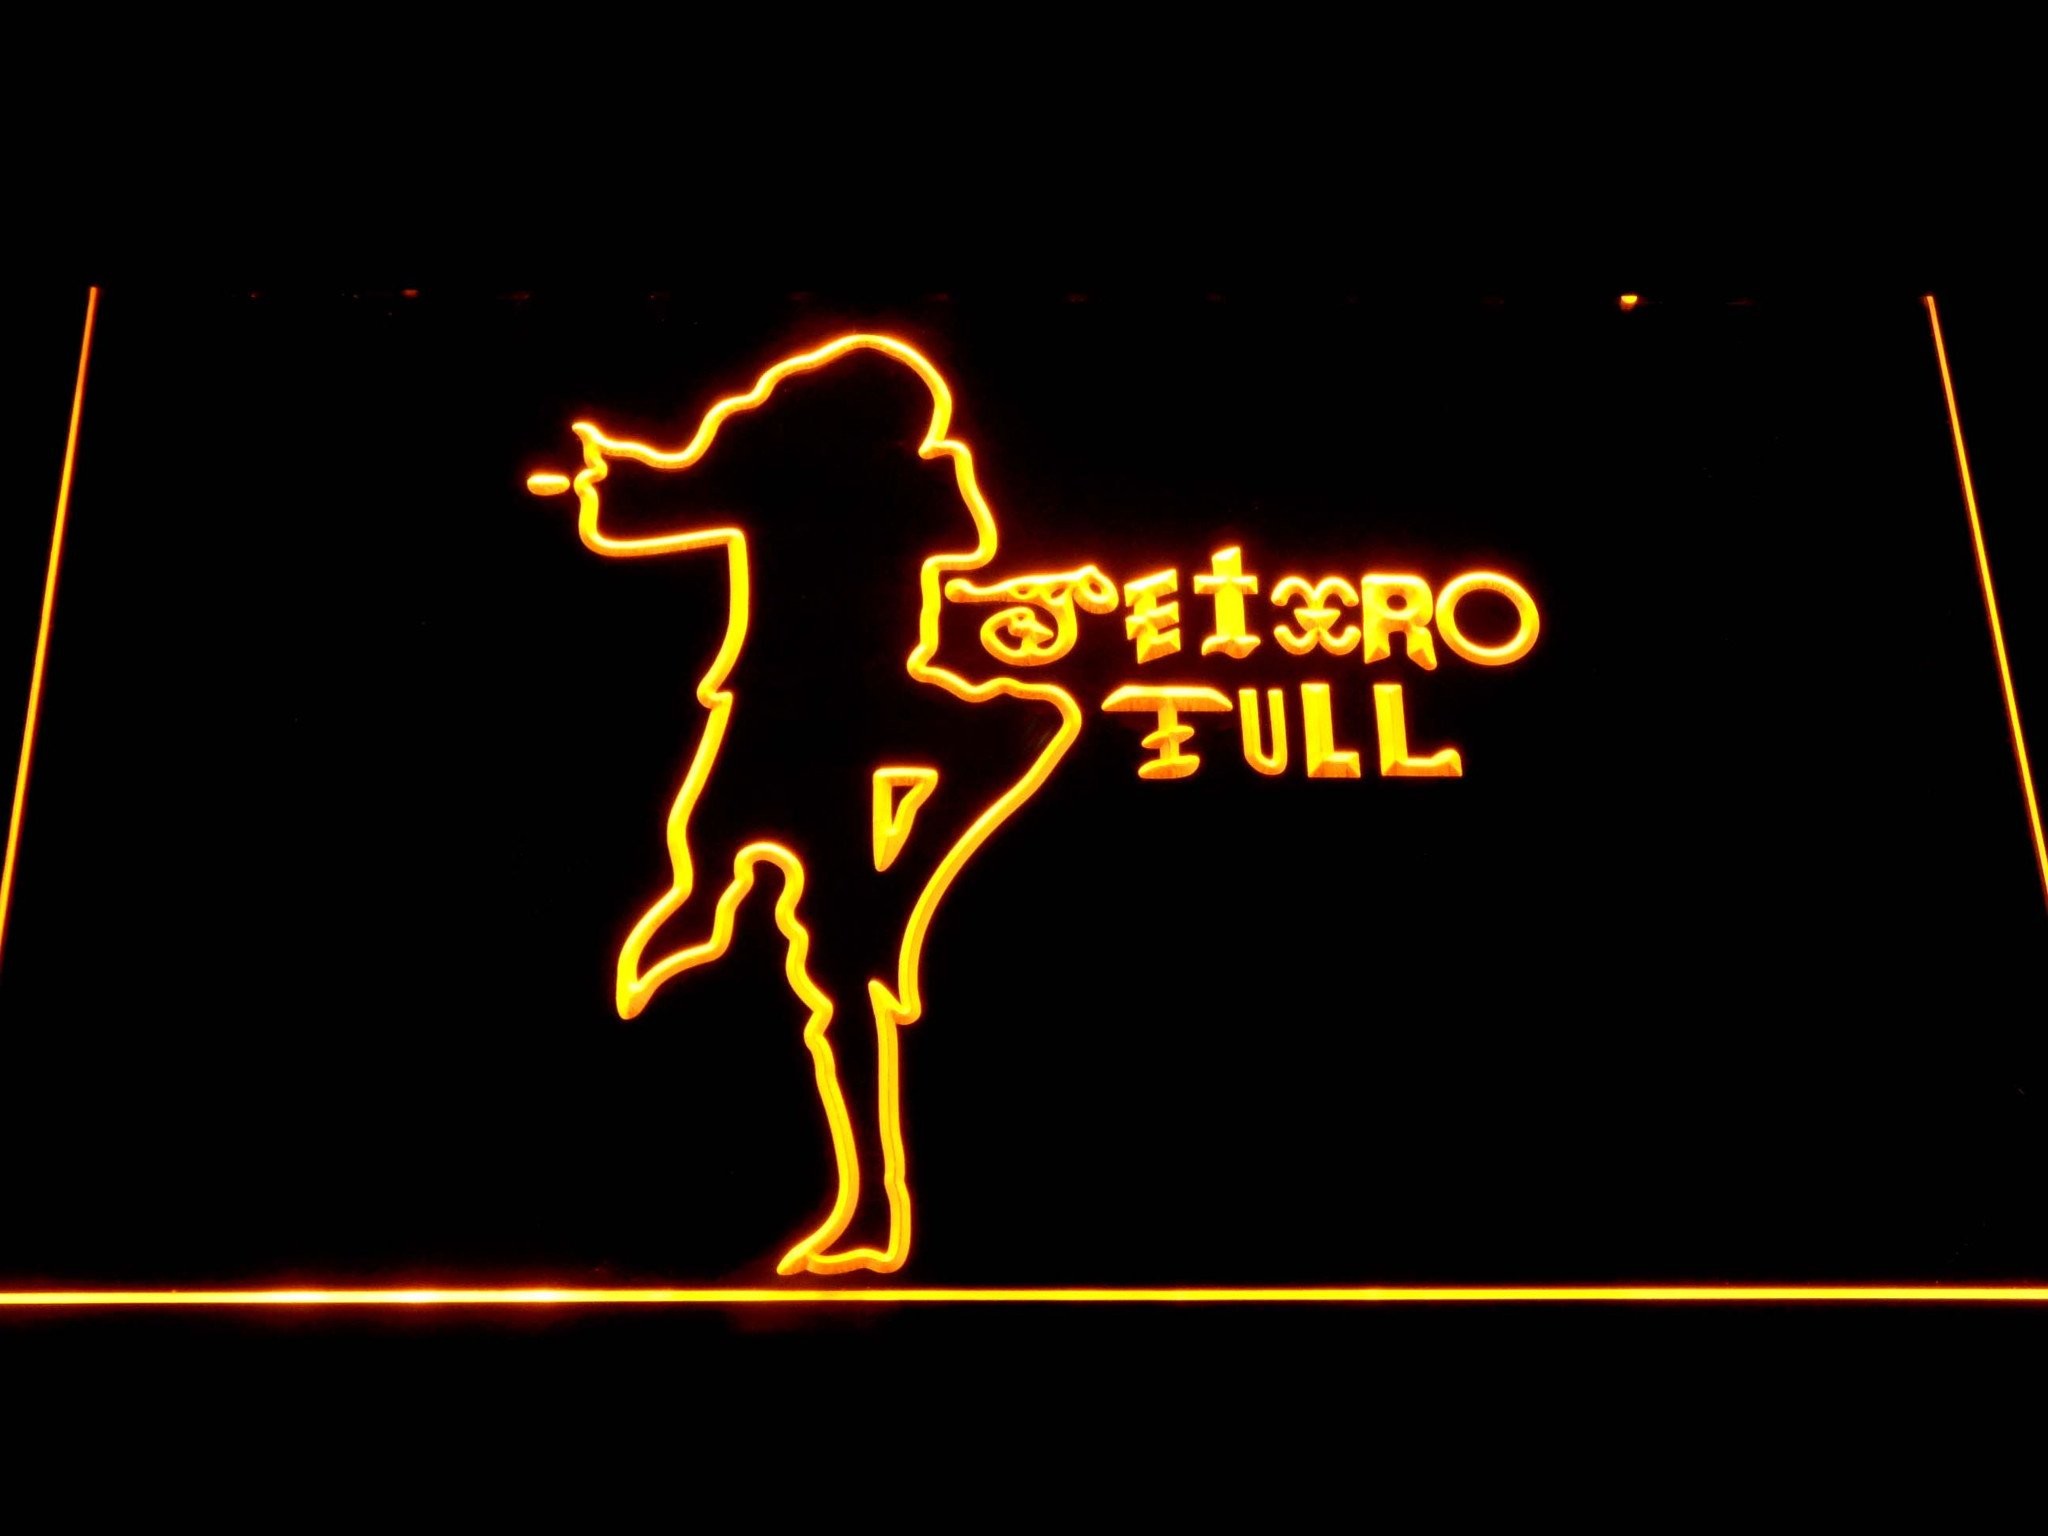 2048x1536 Jethro Tull LED Sign Â· Jethro Tull LED Sign ...